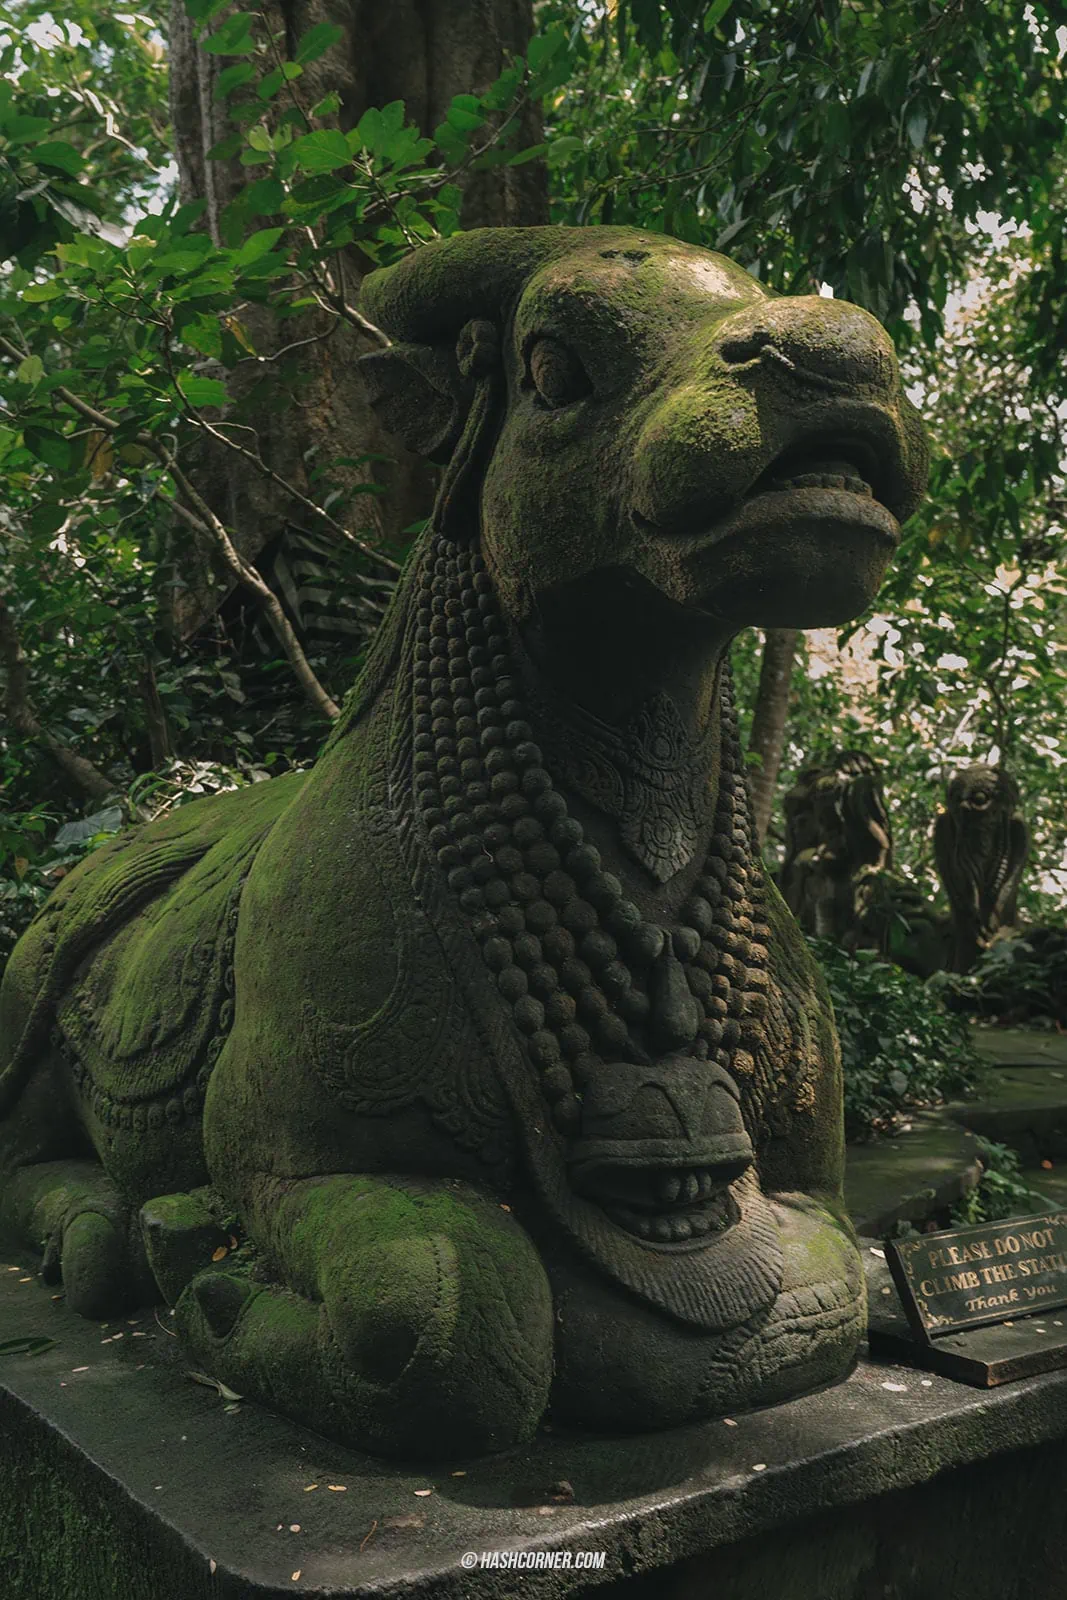 รีวิว อูบุด (Ubud) x บาหลี เที่ยวป่าลิง นาขั้นบันได และวัดศักดิ์สิทธิ์